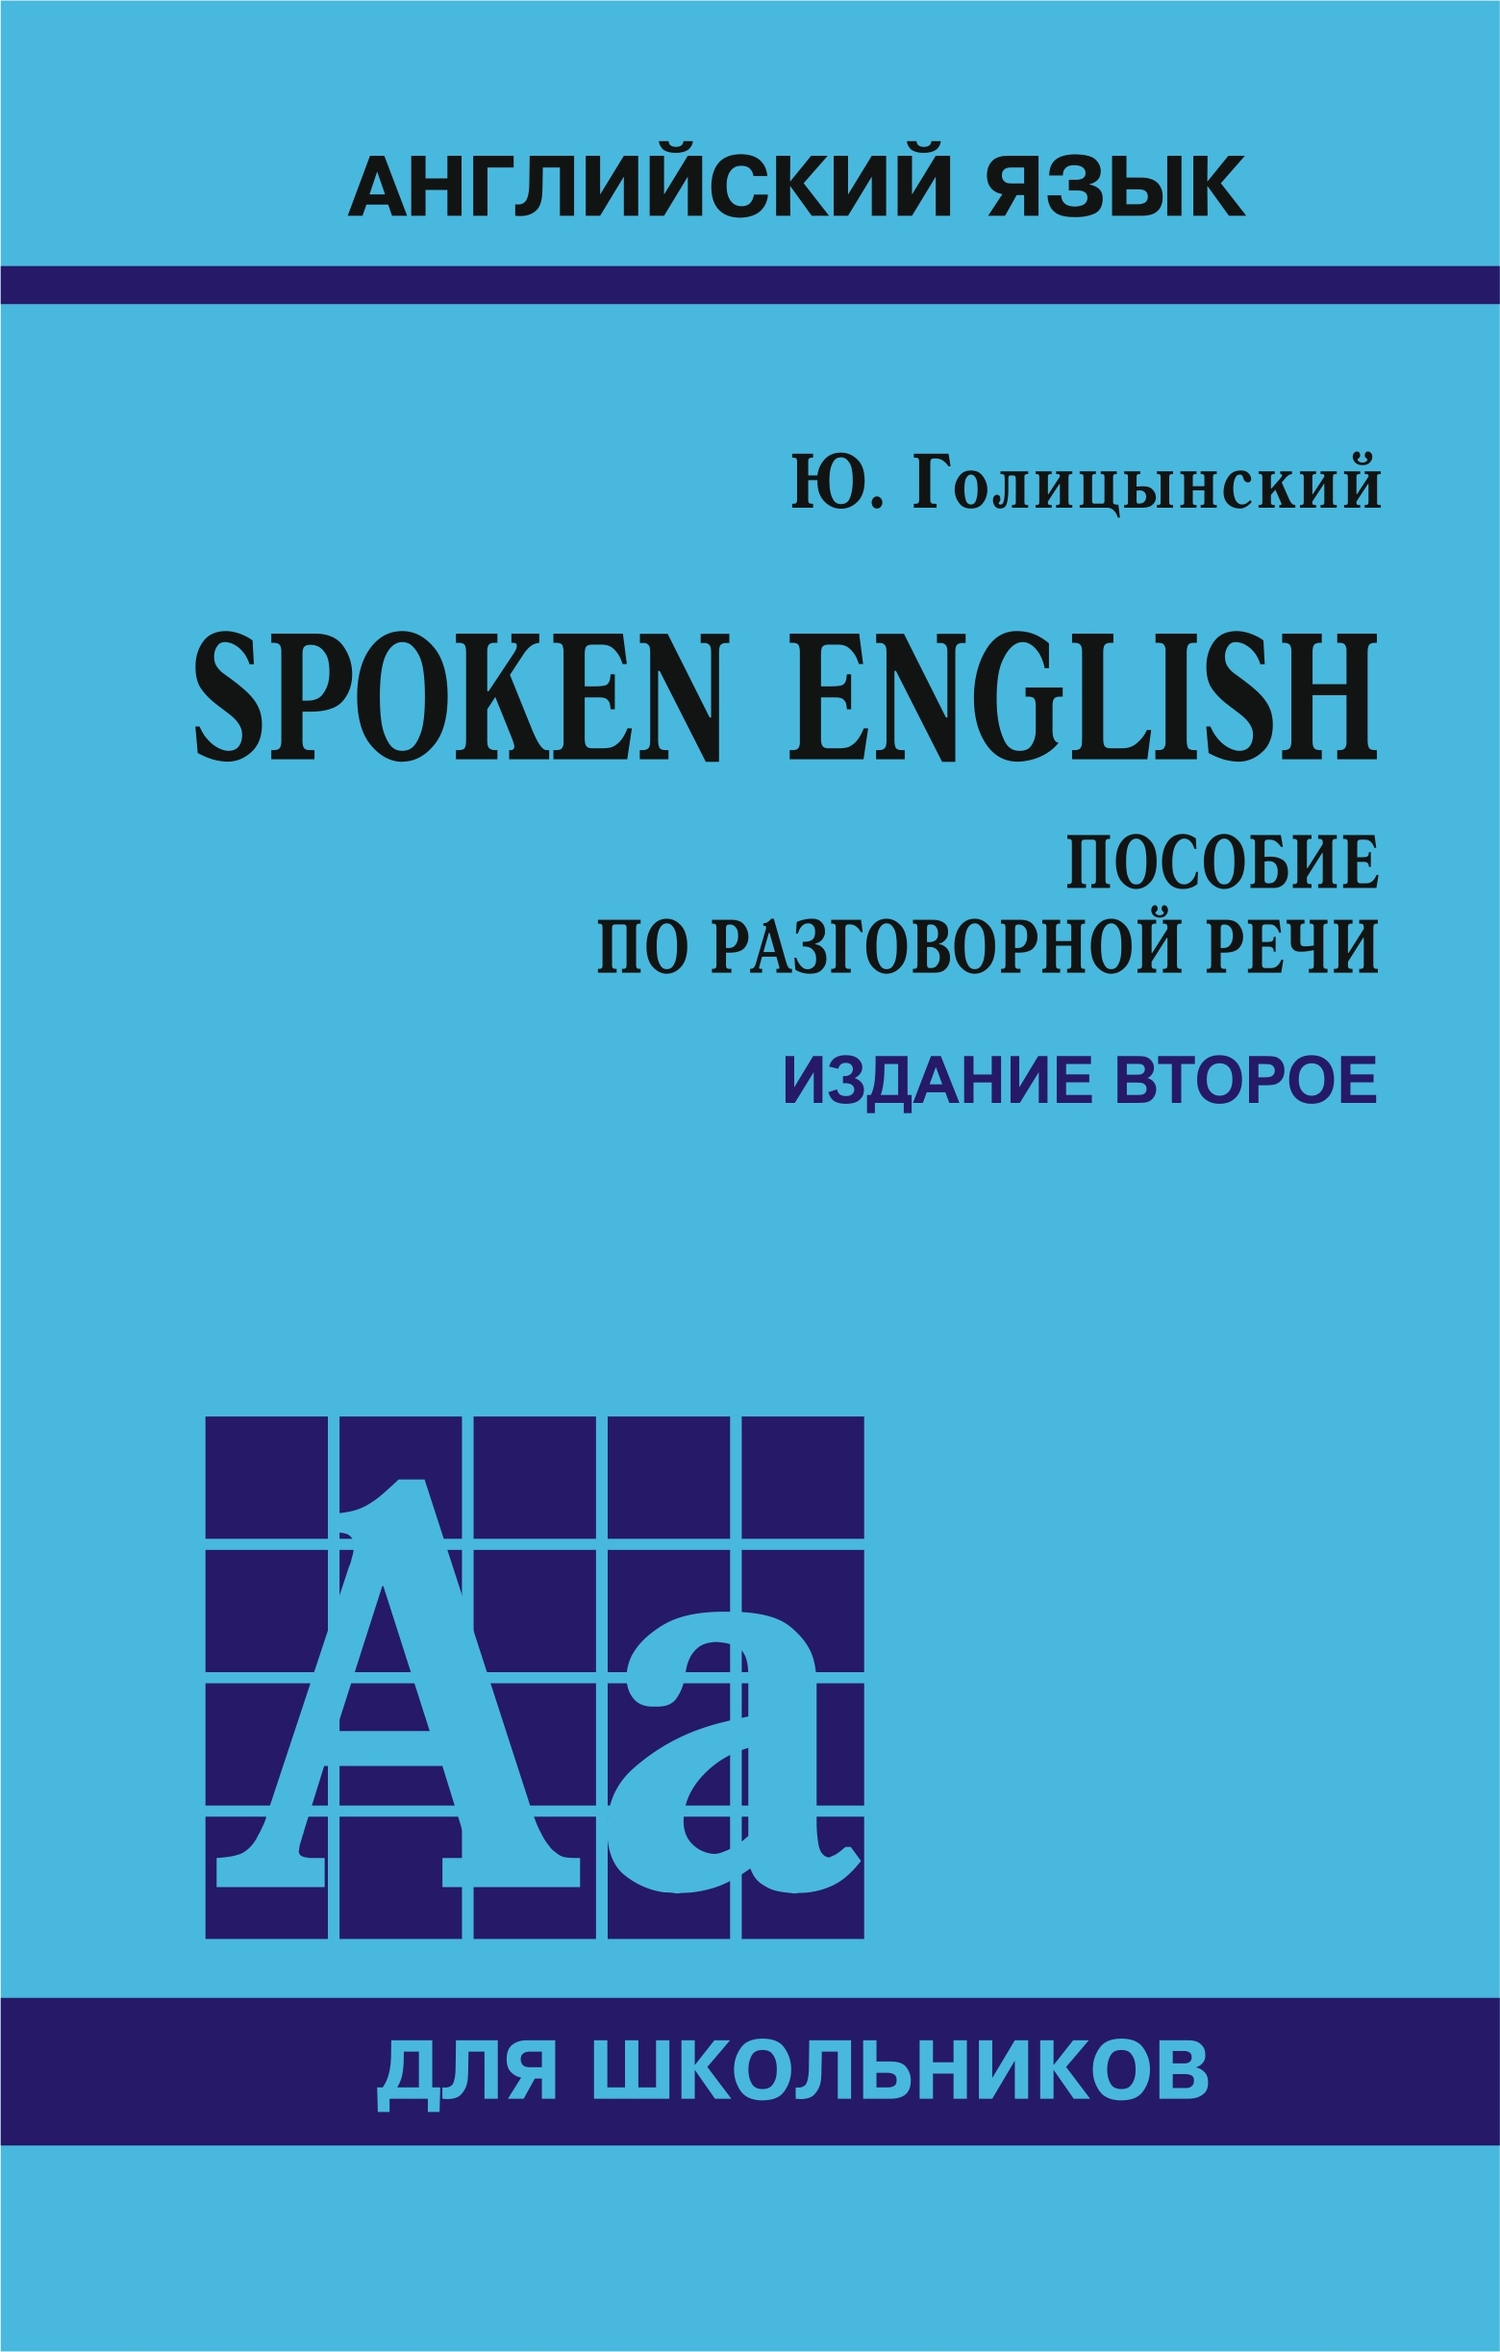 Spoken English.Пособие по разговорной речи для школьников. 2-е издание